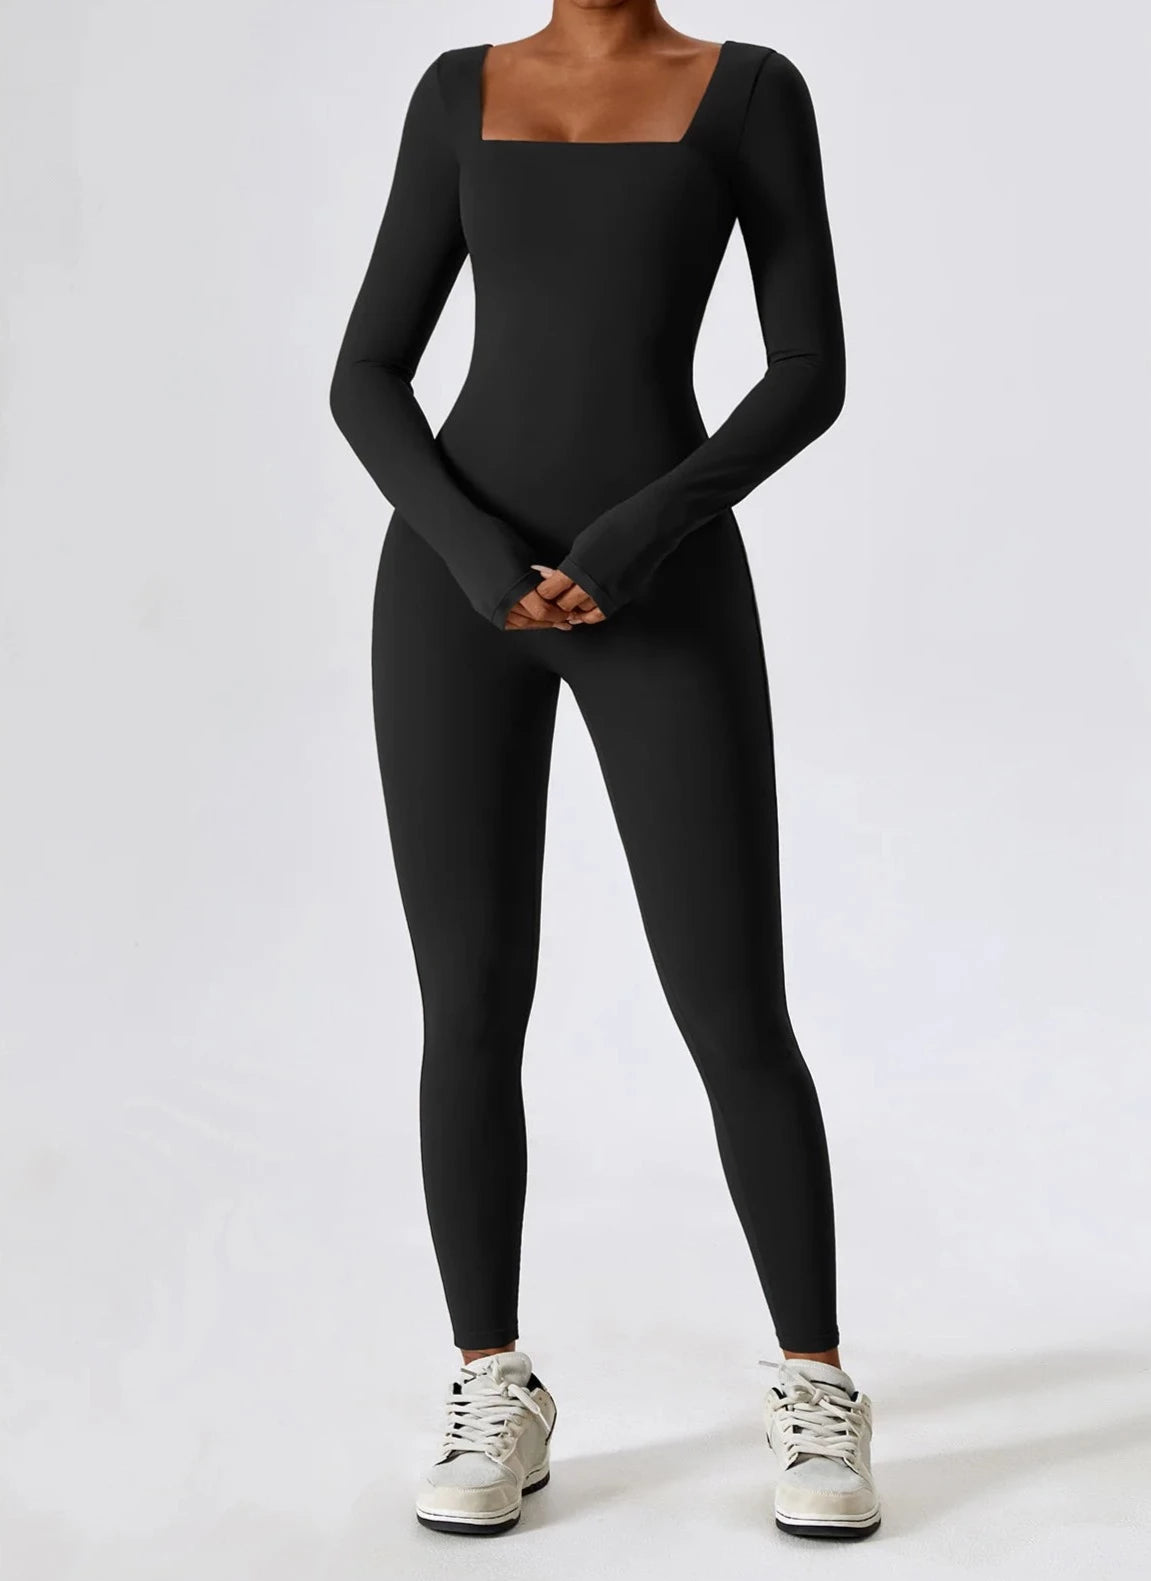 Flex Form Winter Jumpsuit Jumpsuit Starlethics Advanced Black S 